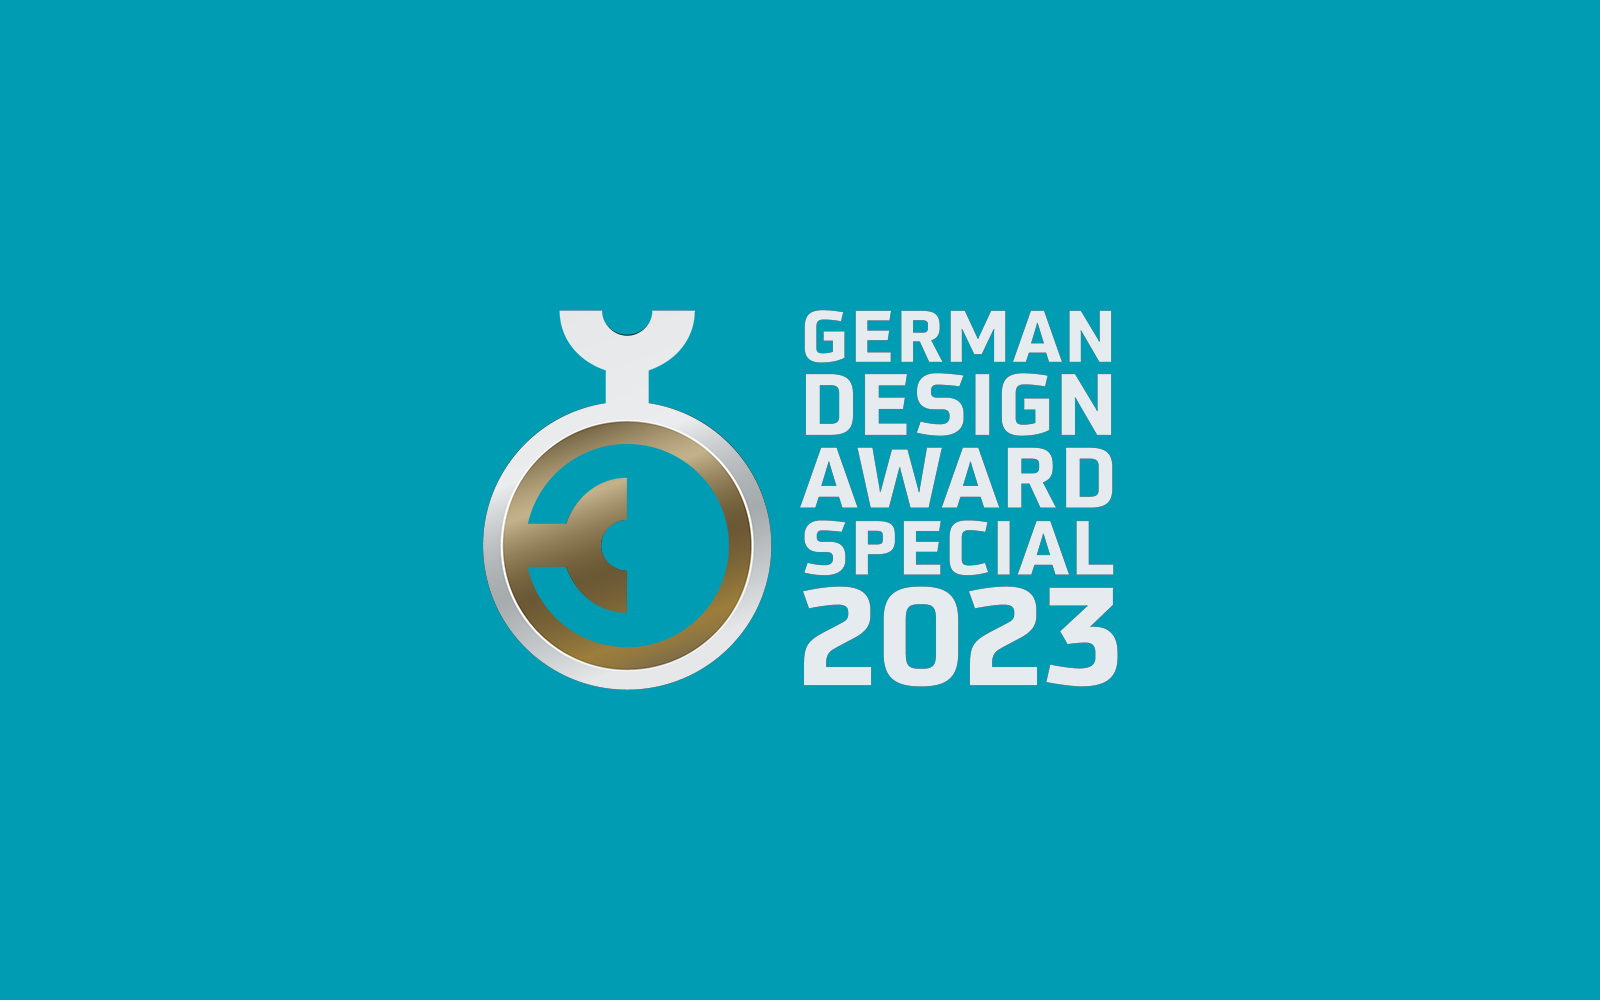 German Design Award Fette Compacting